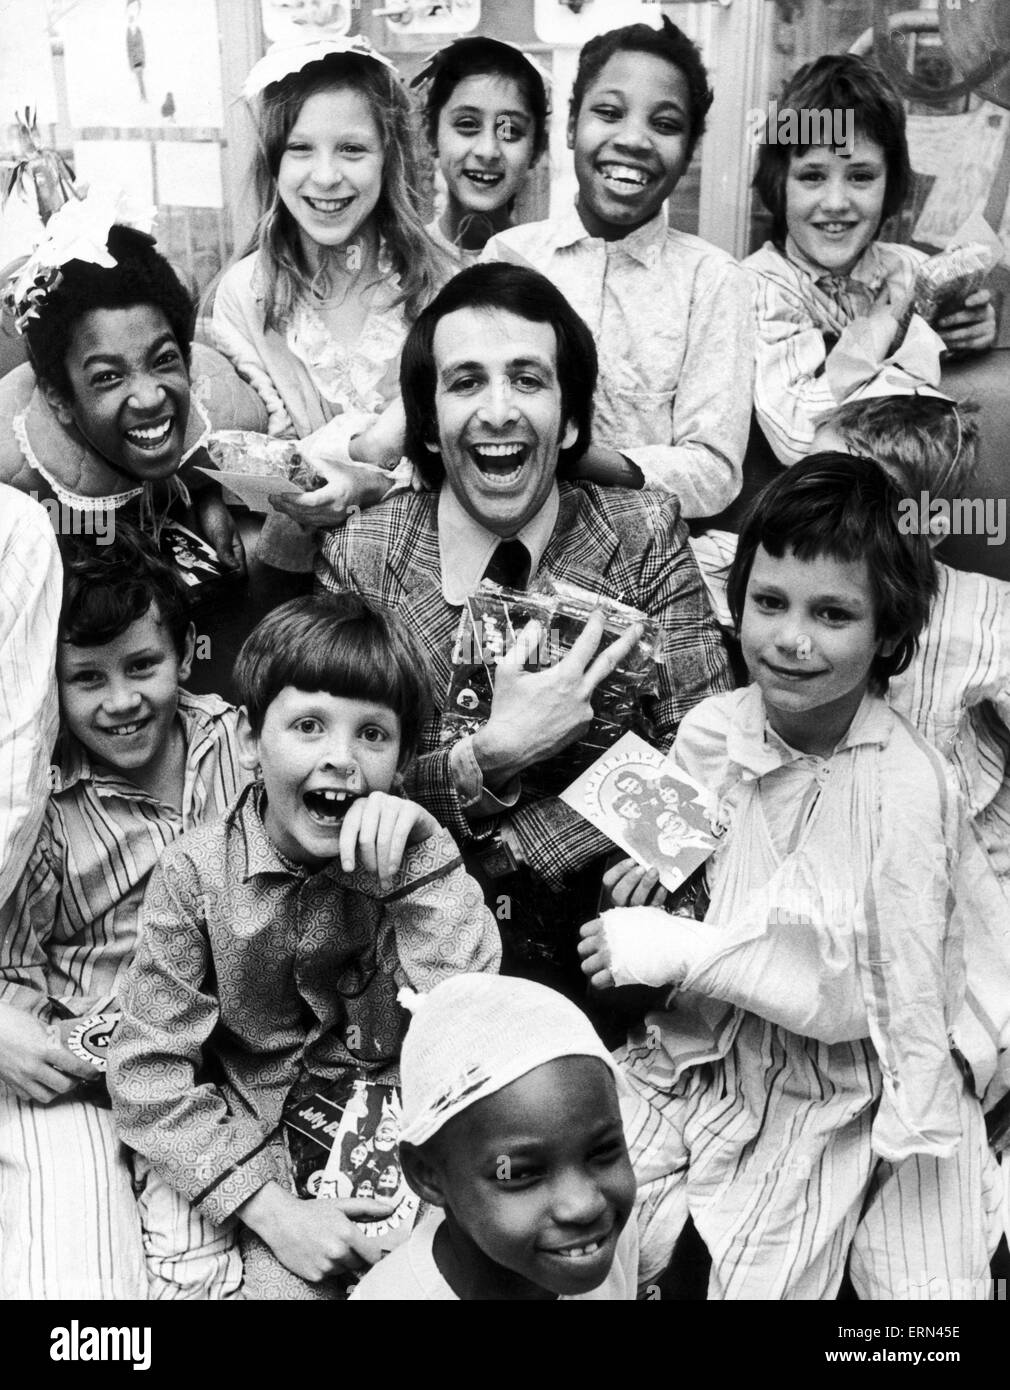 Don Maclean, attore e comico, rende la valutazione aspetto e mani doni per i bambini ricoverati in ospedale Ward, 5 aprile 1974. Foto Stock